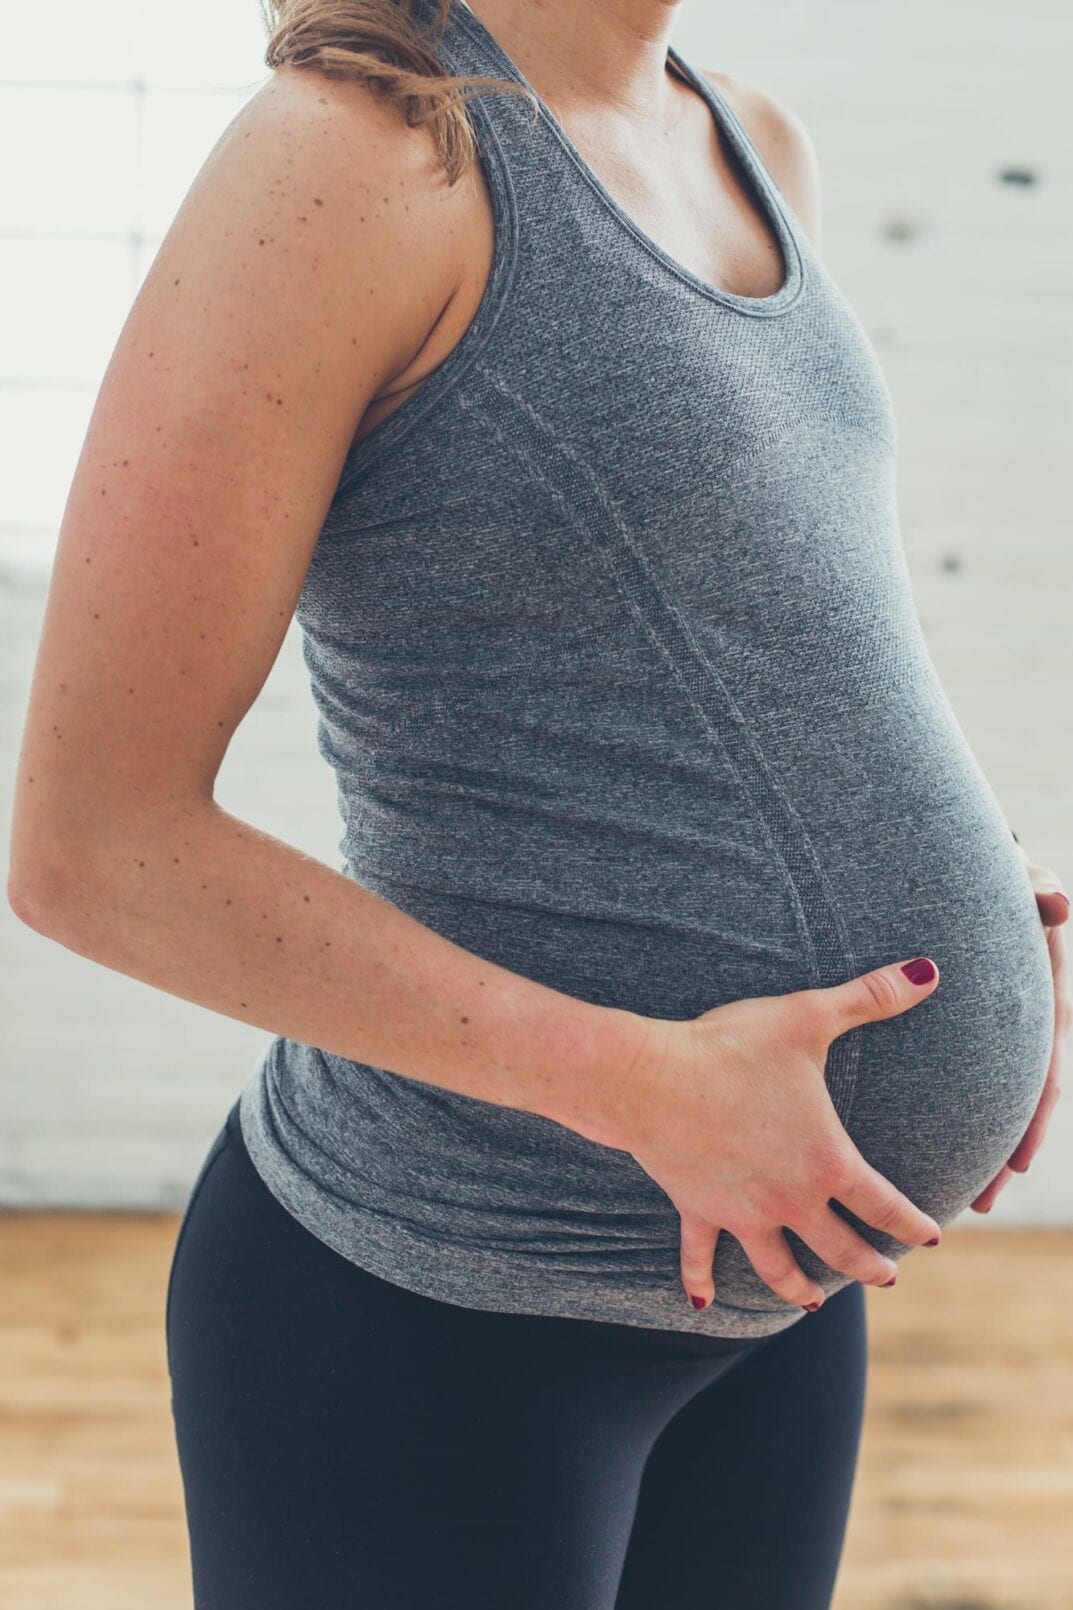 Fit Pregnancy Workout Tanks